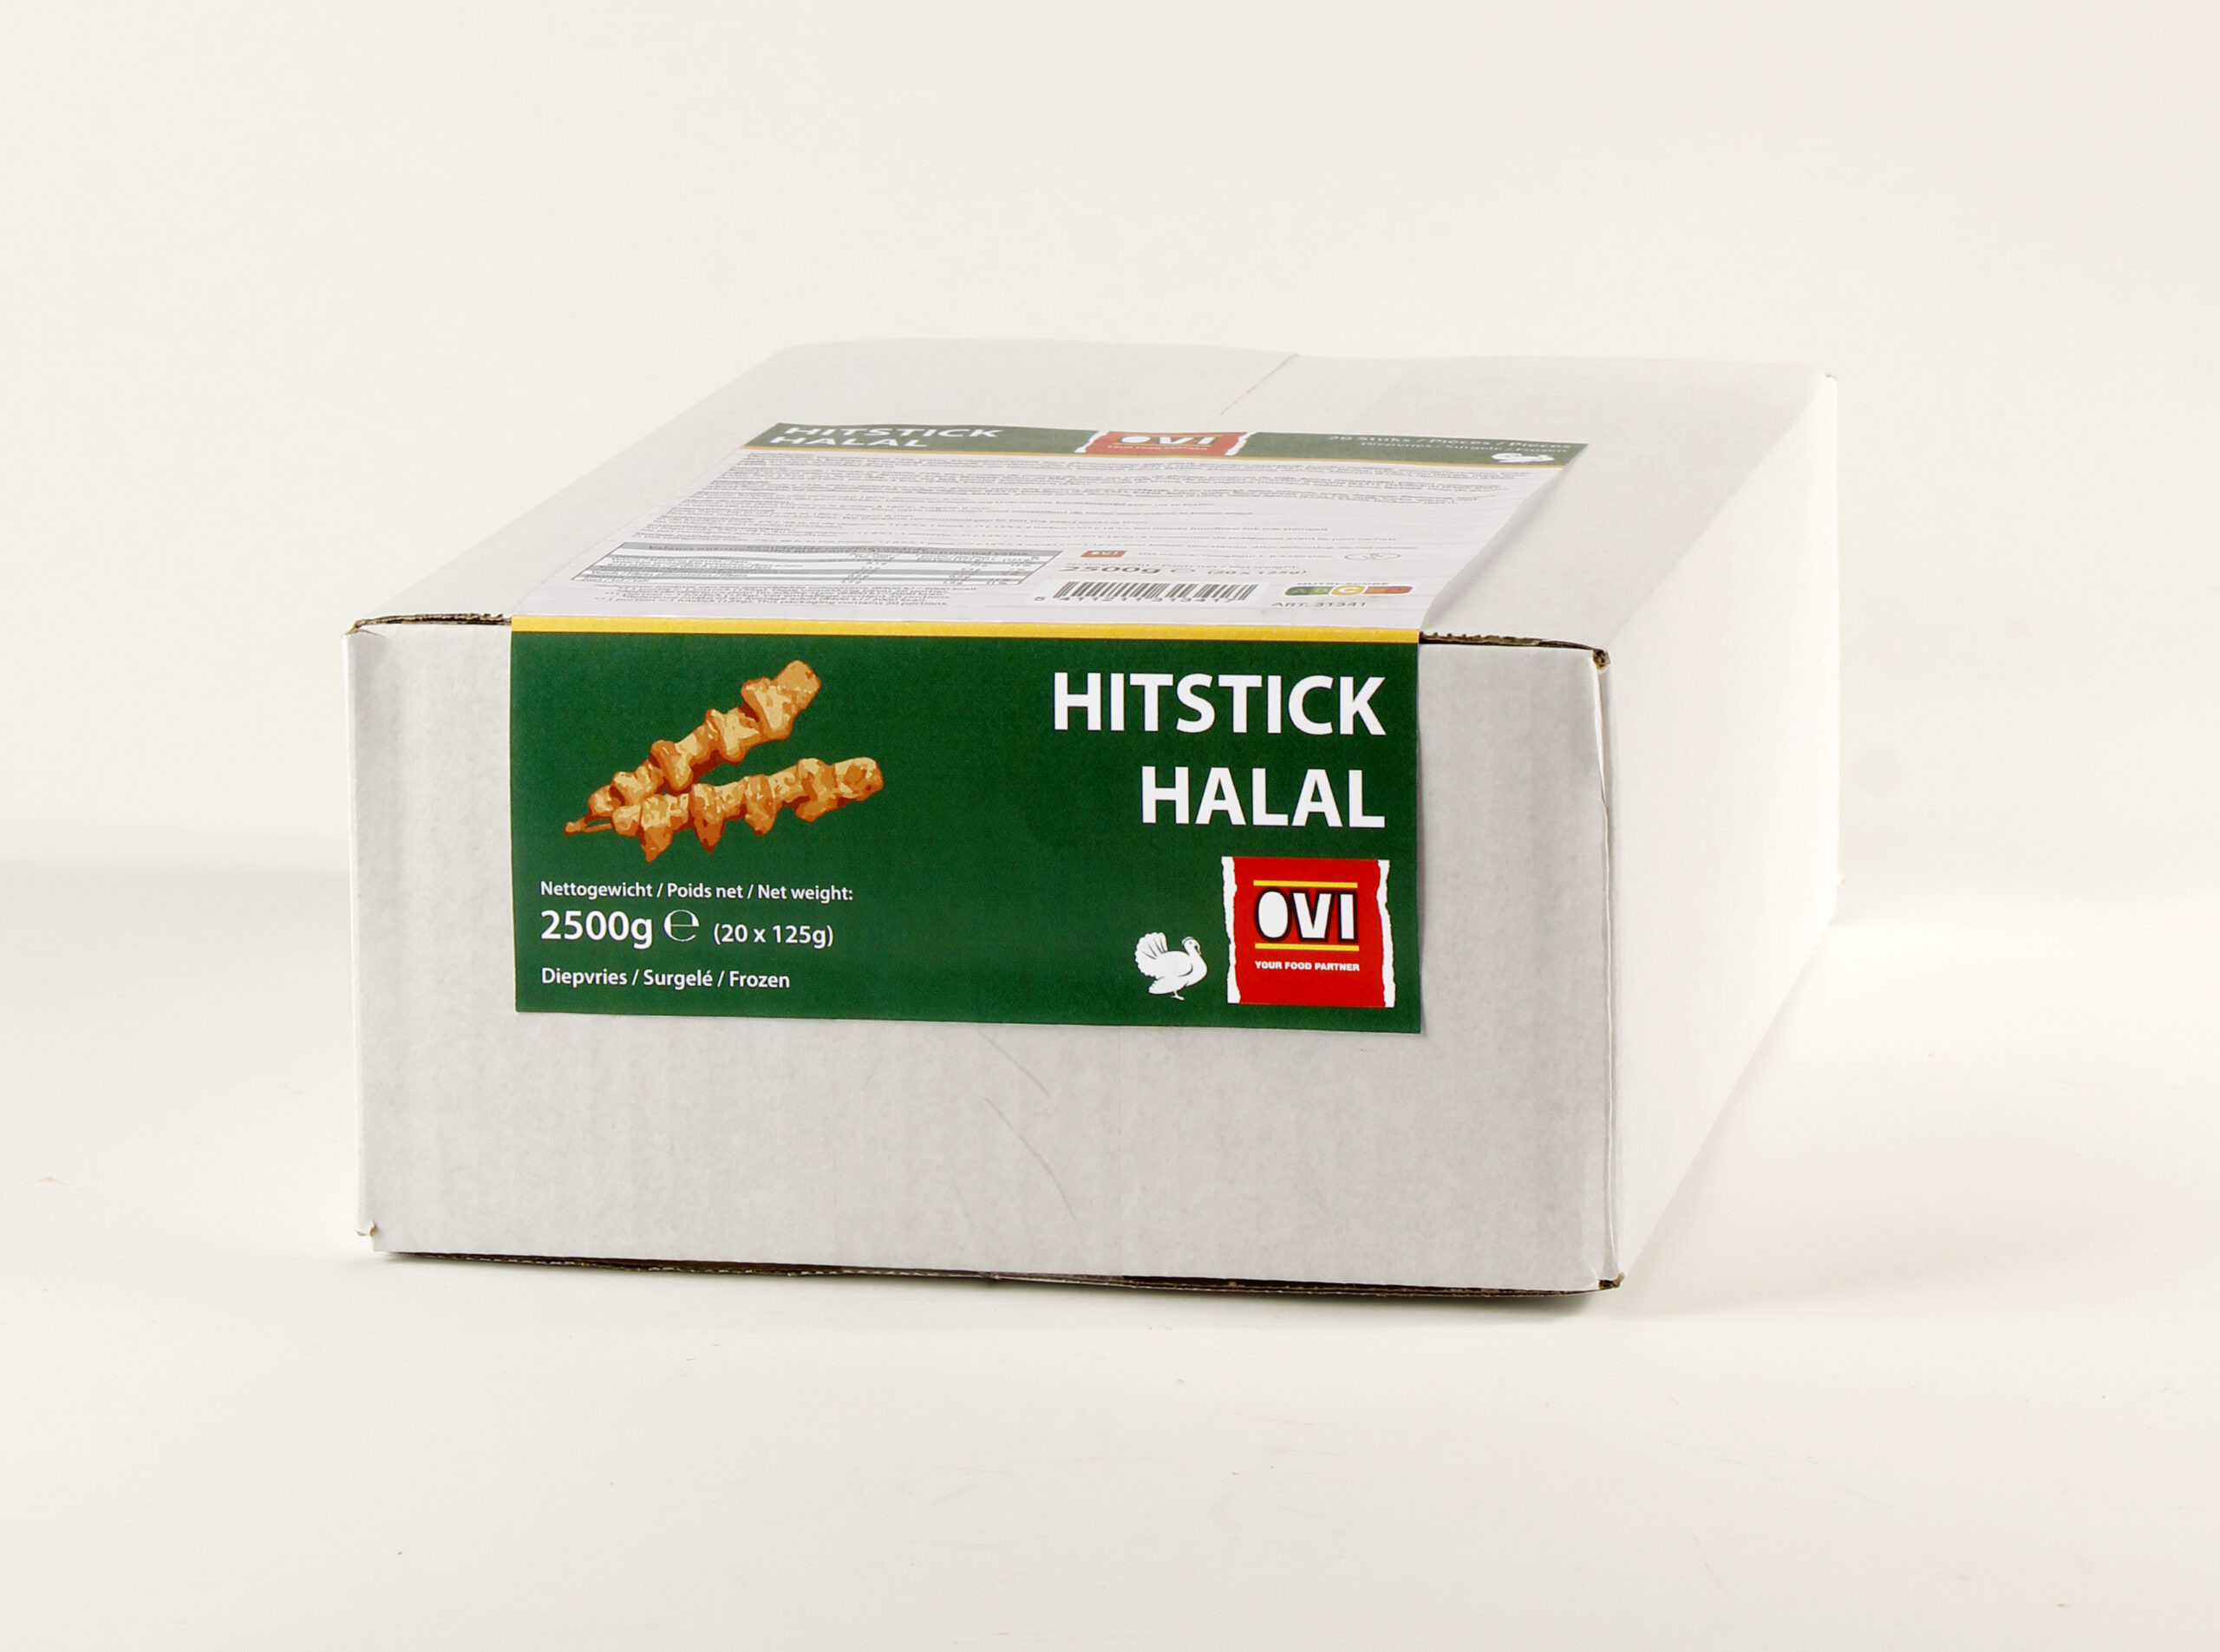 31341 Hitstick Halal 20 X 125g OVI (1)